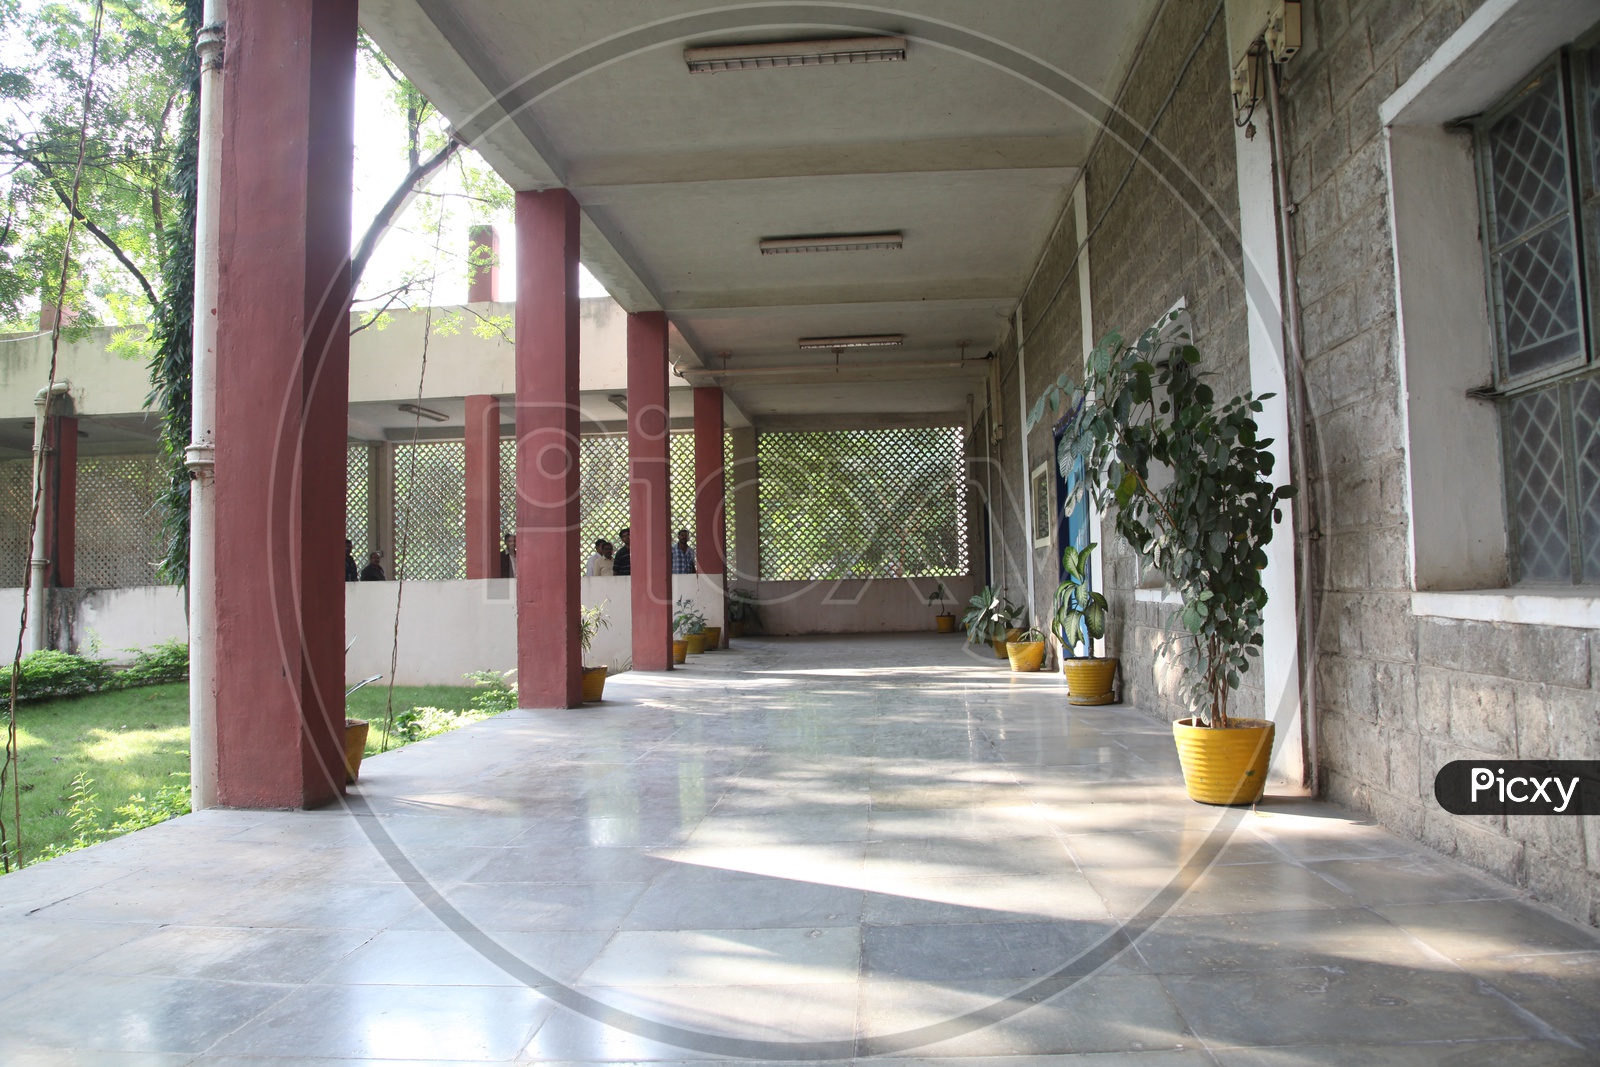 Corridor of School/College